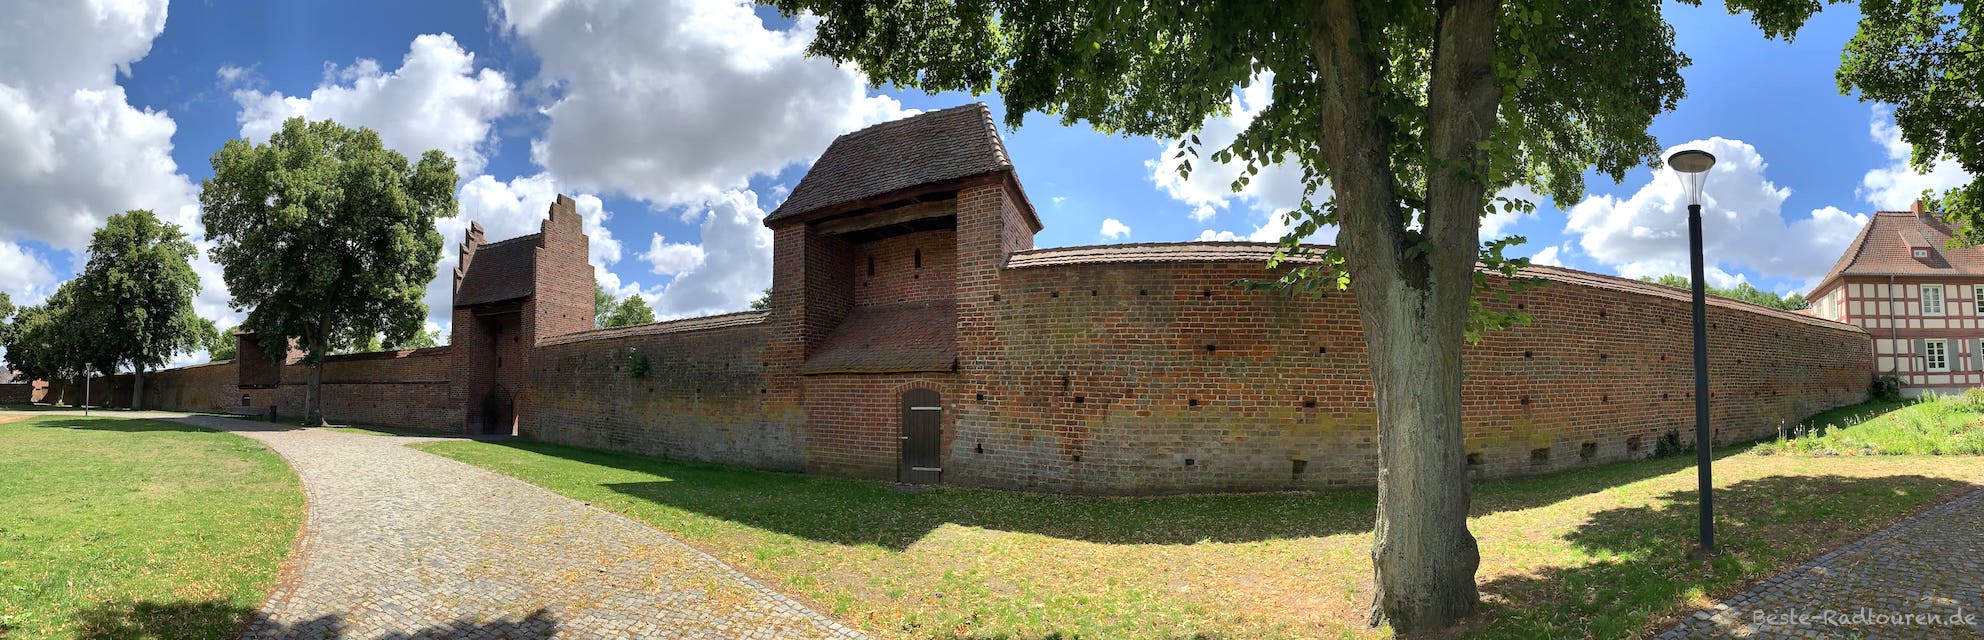 Südseite der alten Stadtmauer von Wittstock. Rechts das Museum